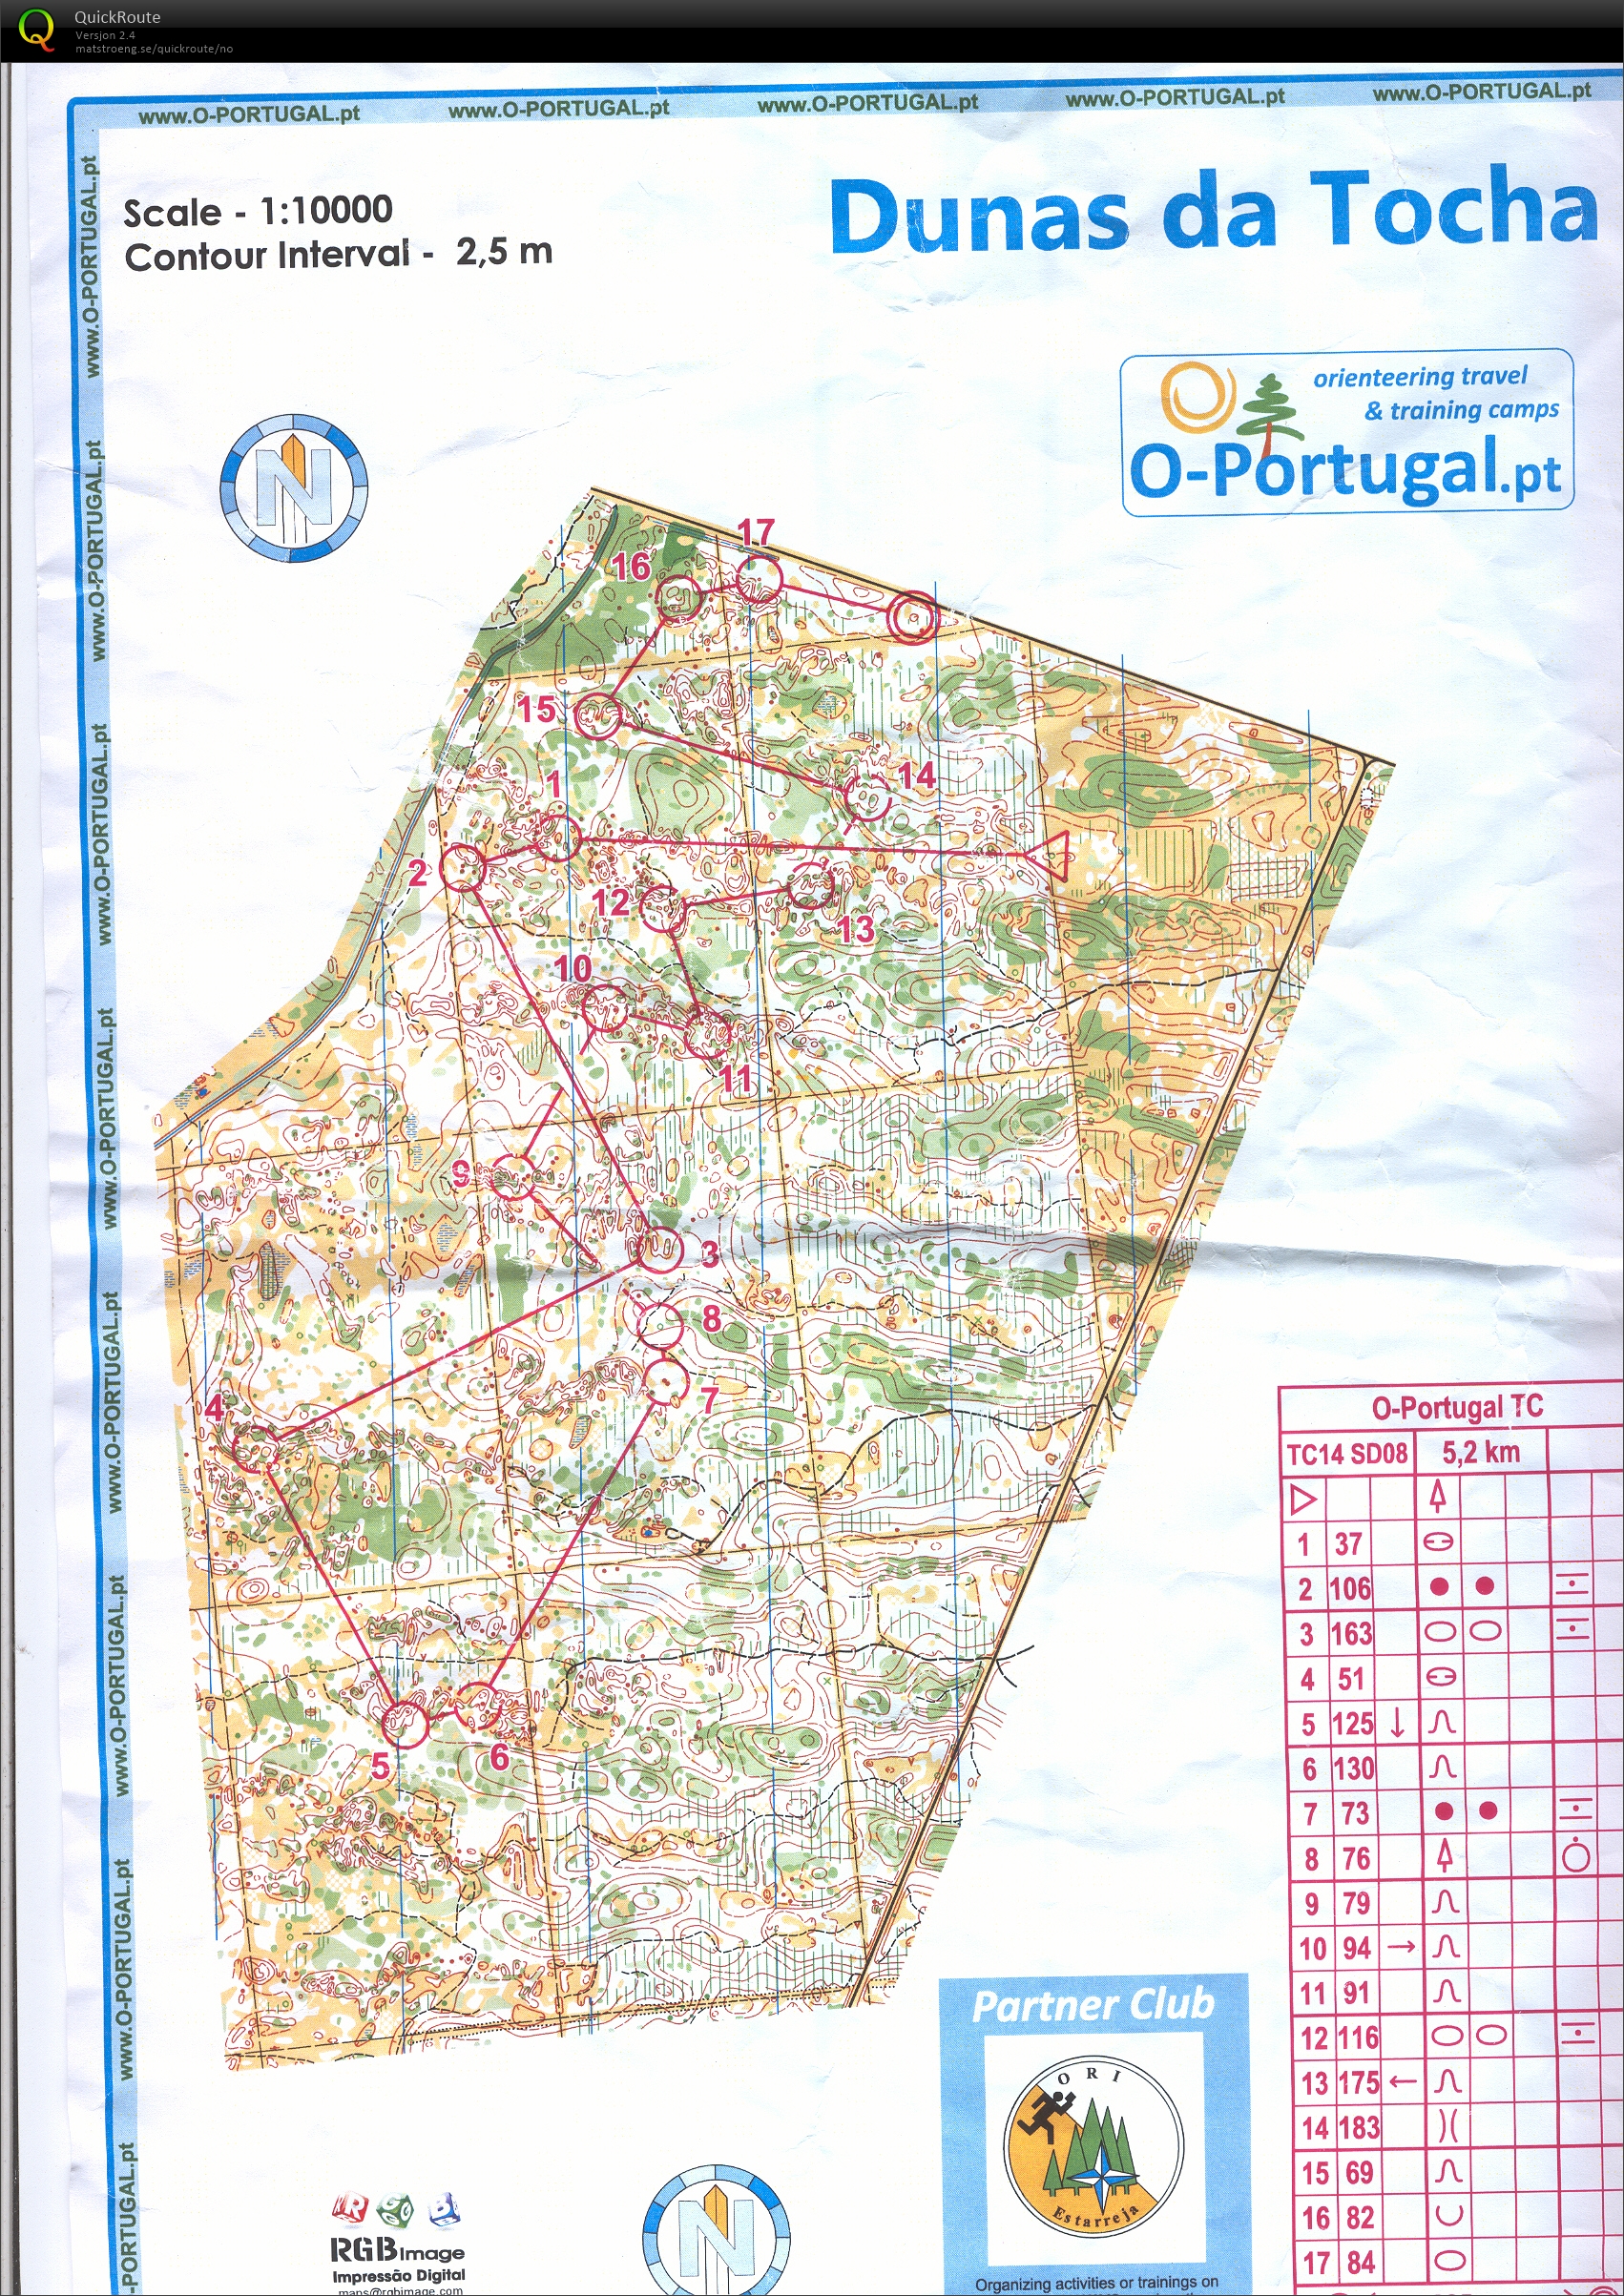 Portugal økt 6 (22/01/2014)